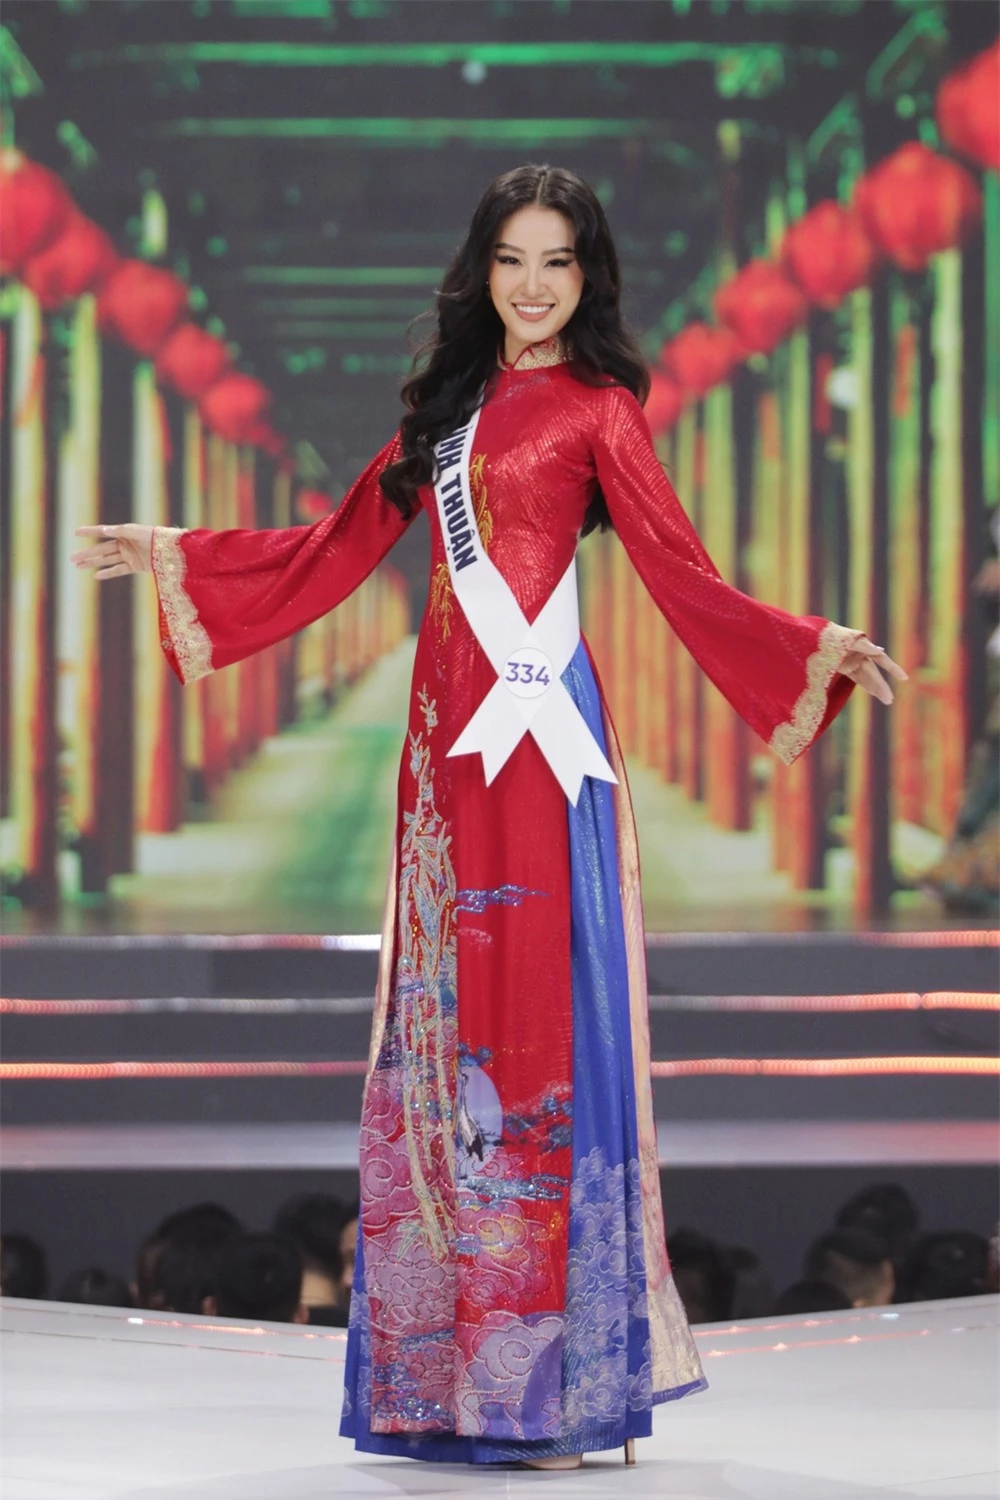 Bán kết Hoa hậu Hoàn vũ Việt Nam 2022: Loạt ứng viên cùng khoe vẻ nóng bỏng - Ảnh 10.